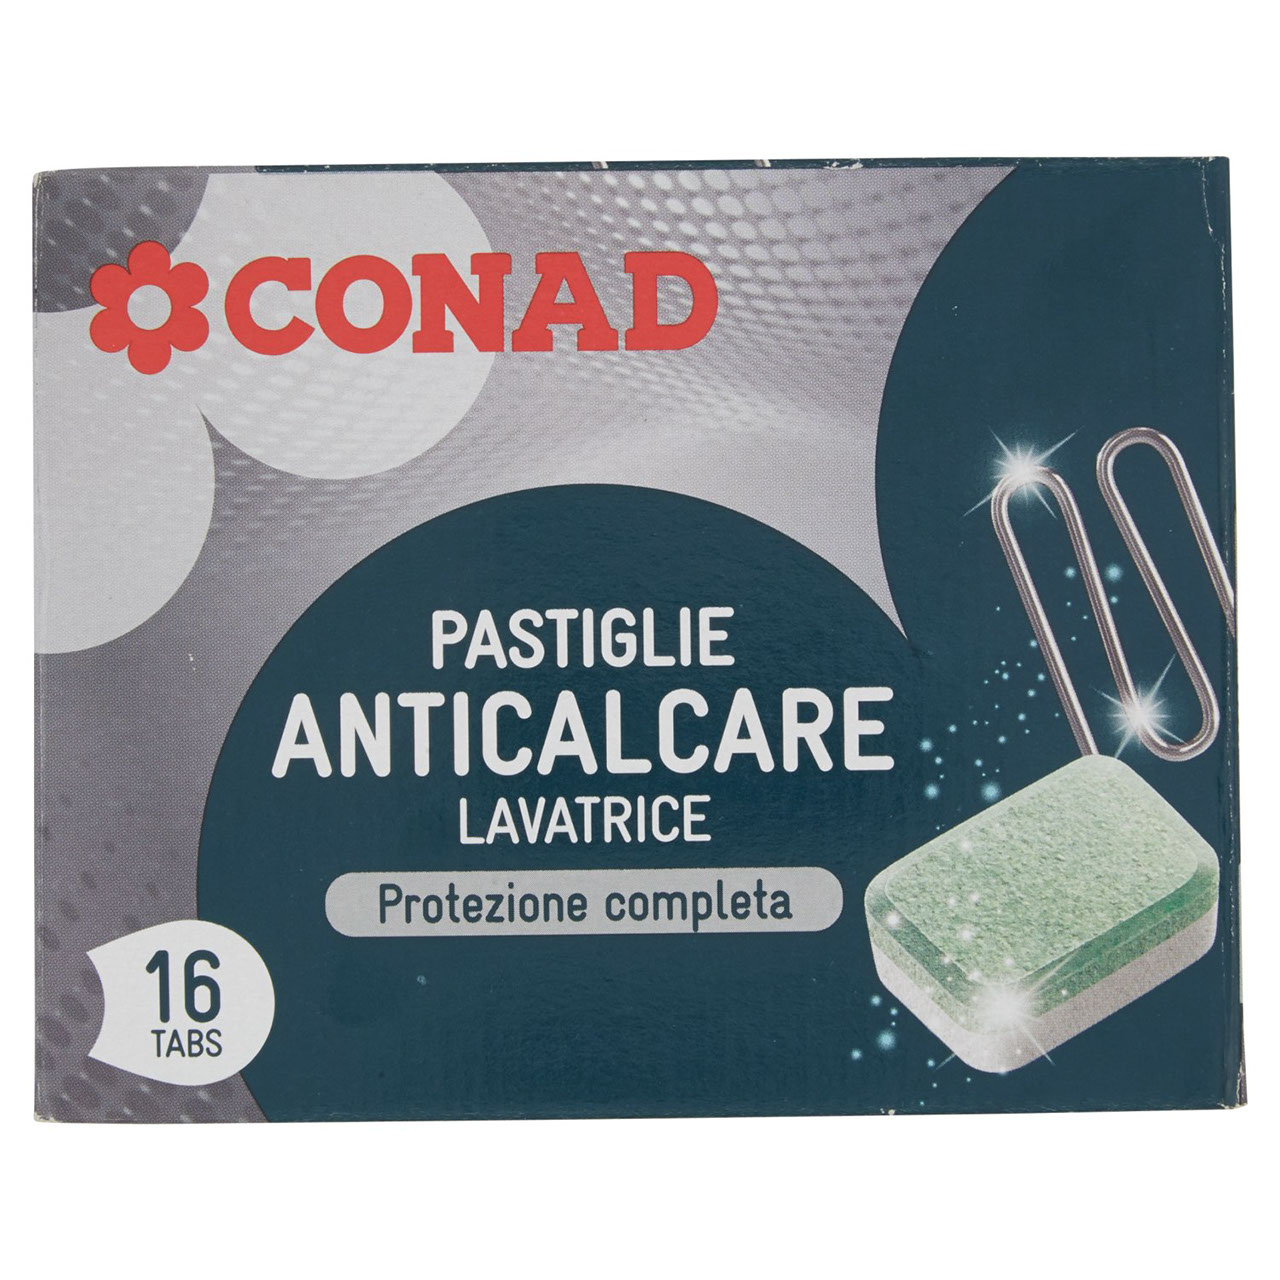 Pastiglie Anticalcare Lavatrice 16 tabs 256g Conad